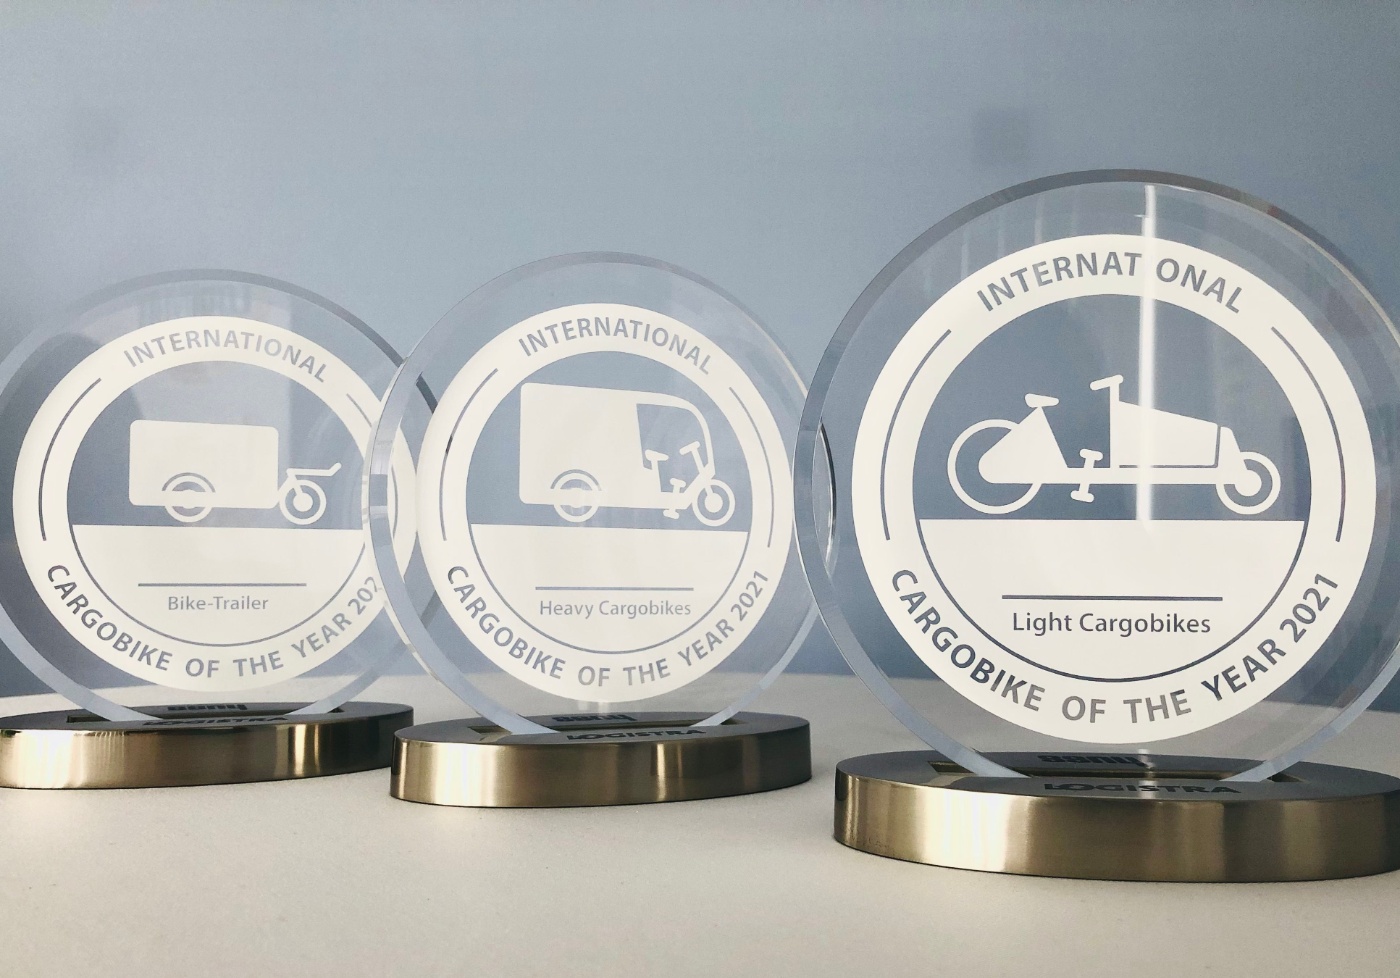 Die Awards zum „International Cargobike of the Year“ werden in den drei Klassen „Light Cargobikes“, „Heavy Cargobikes“ und „Bike-Trailer“ vergeben. Bild: Tanja Schiefele